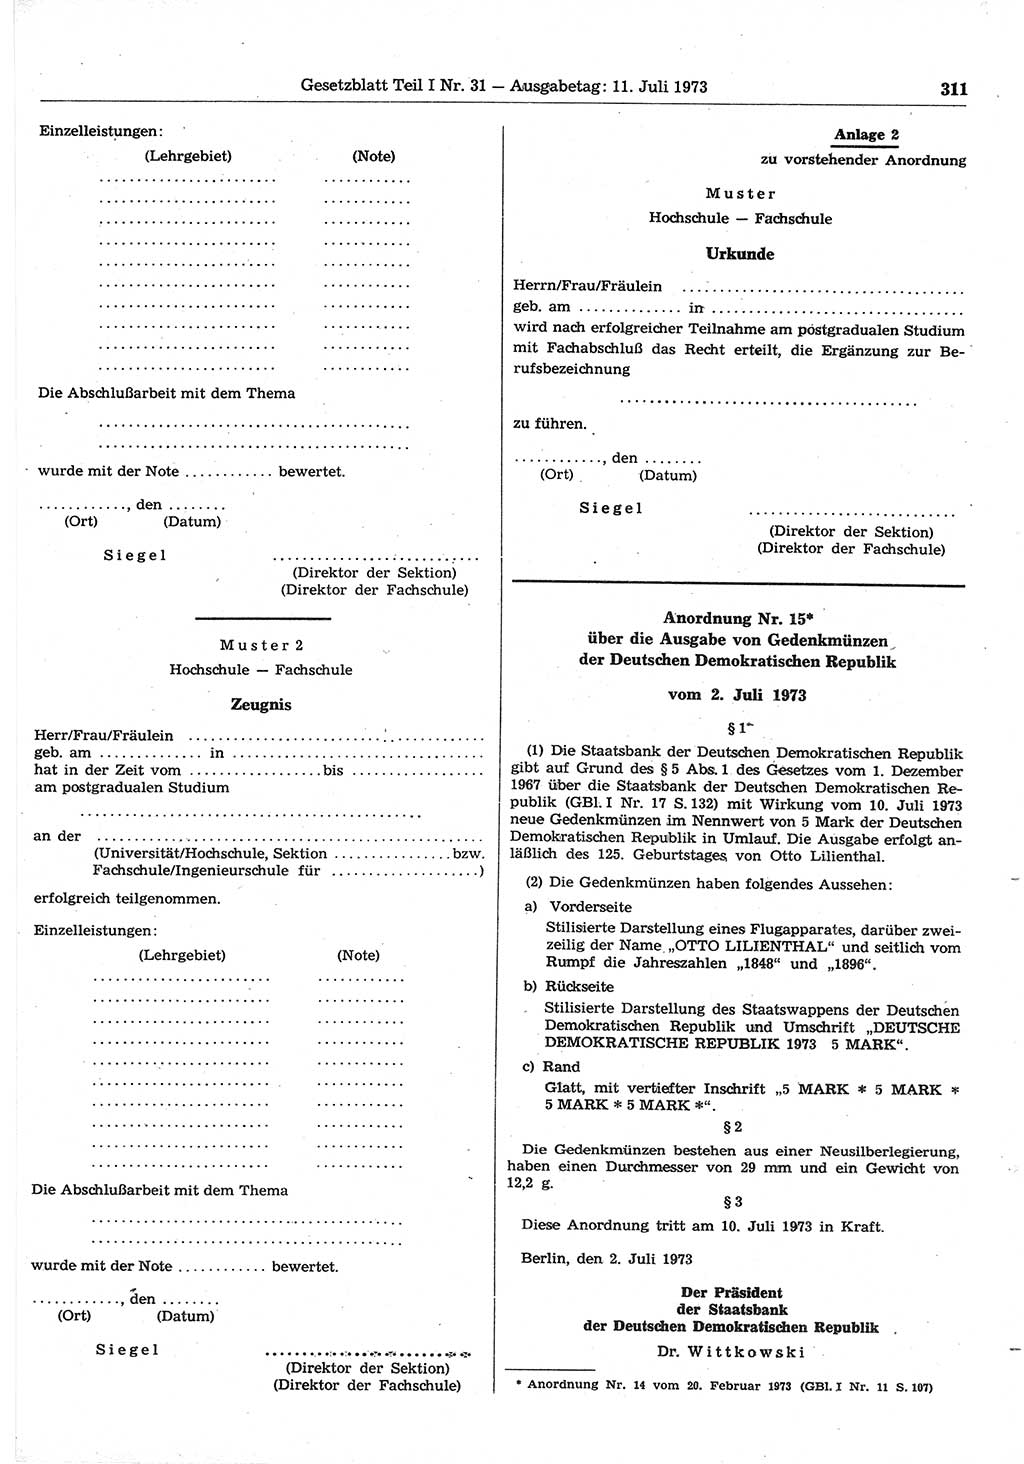 Gesetzblatt (GBl.) der Deutschen Demokratischen Republik (DDR) Teil Ⅰ 1973, Seite 311 (GBl. DDR Ⅰ 1973, S. 311)